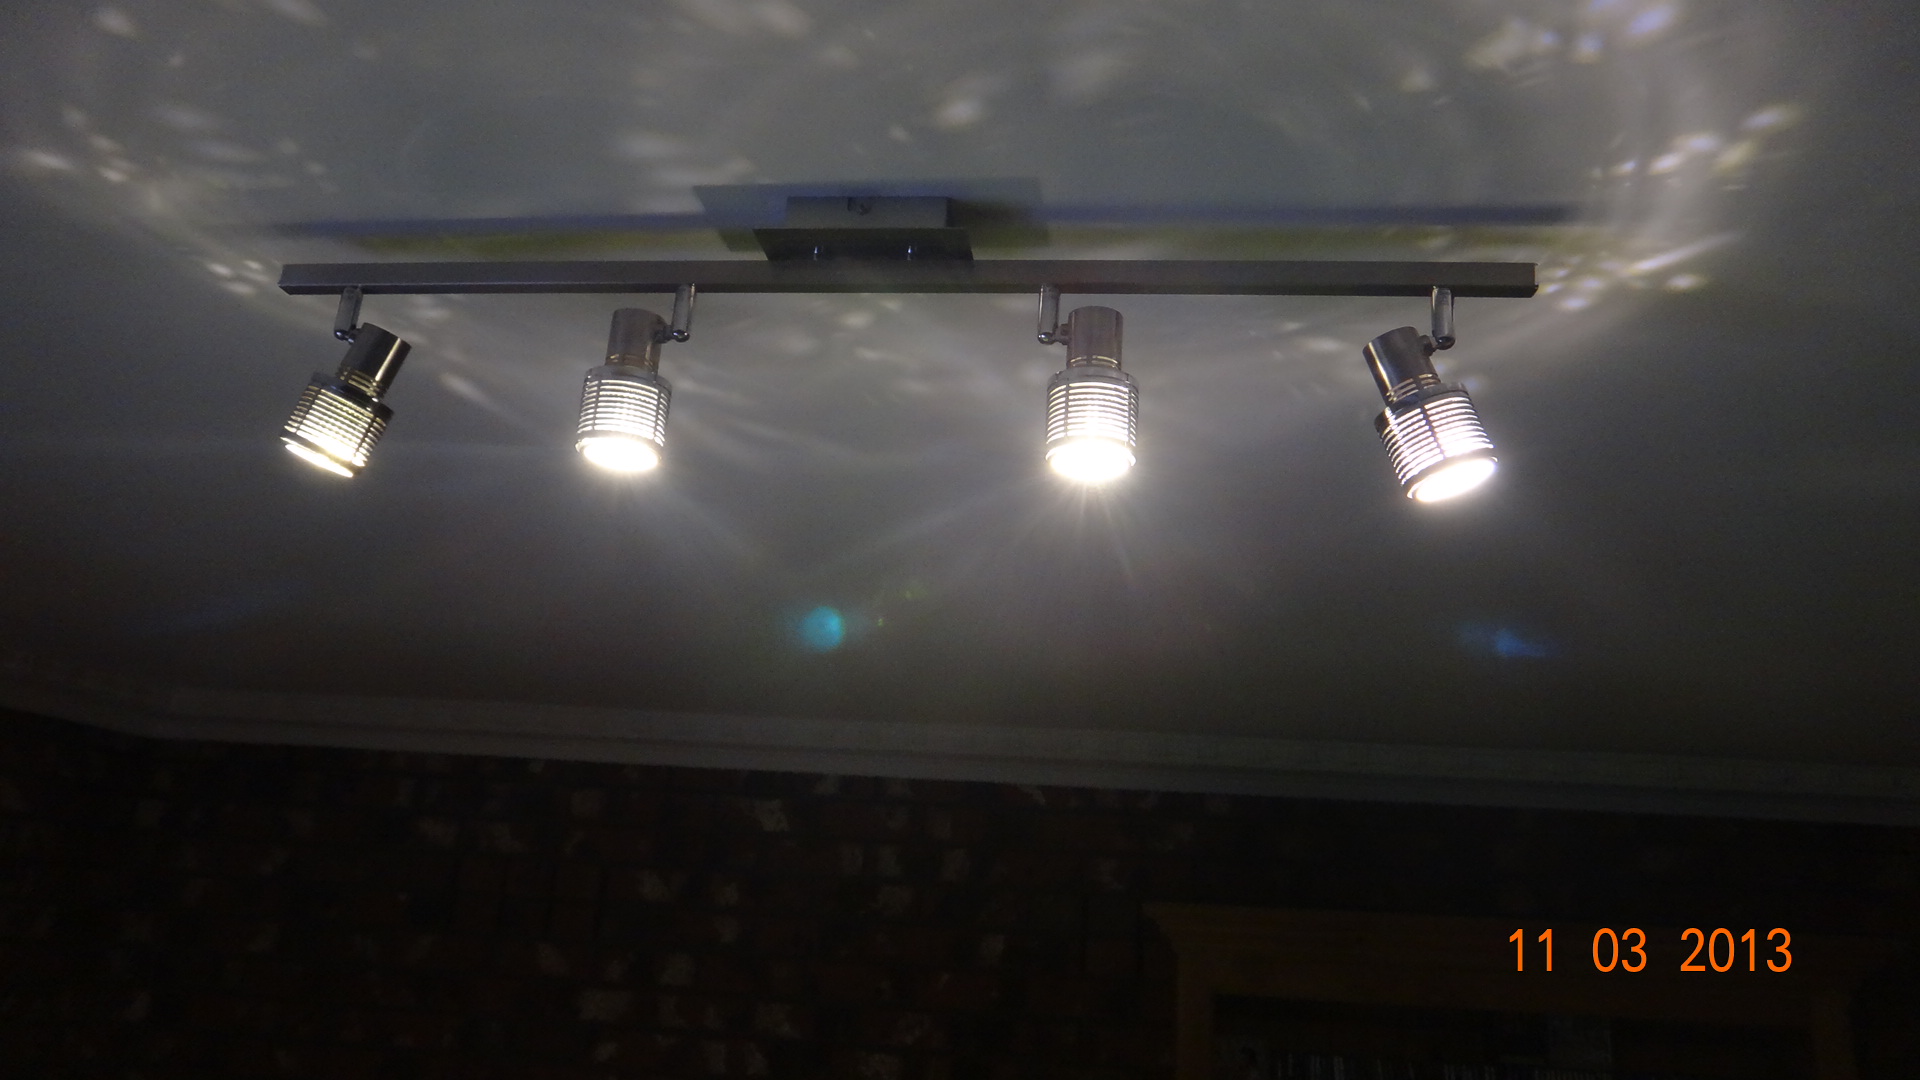 LED Spotlights